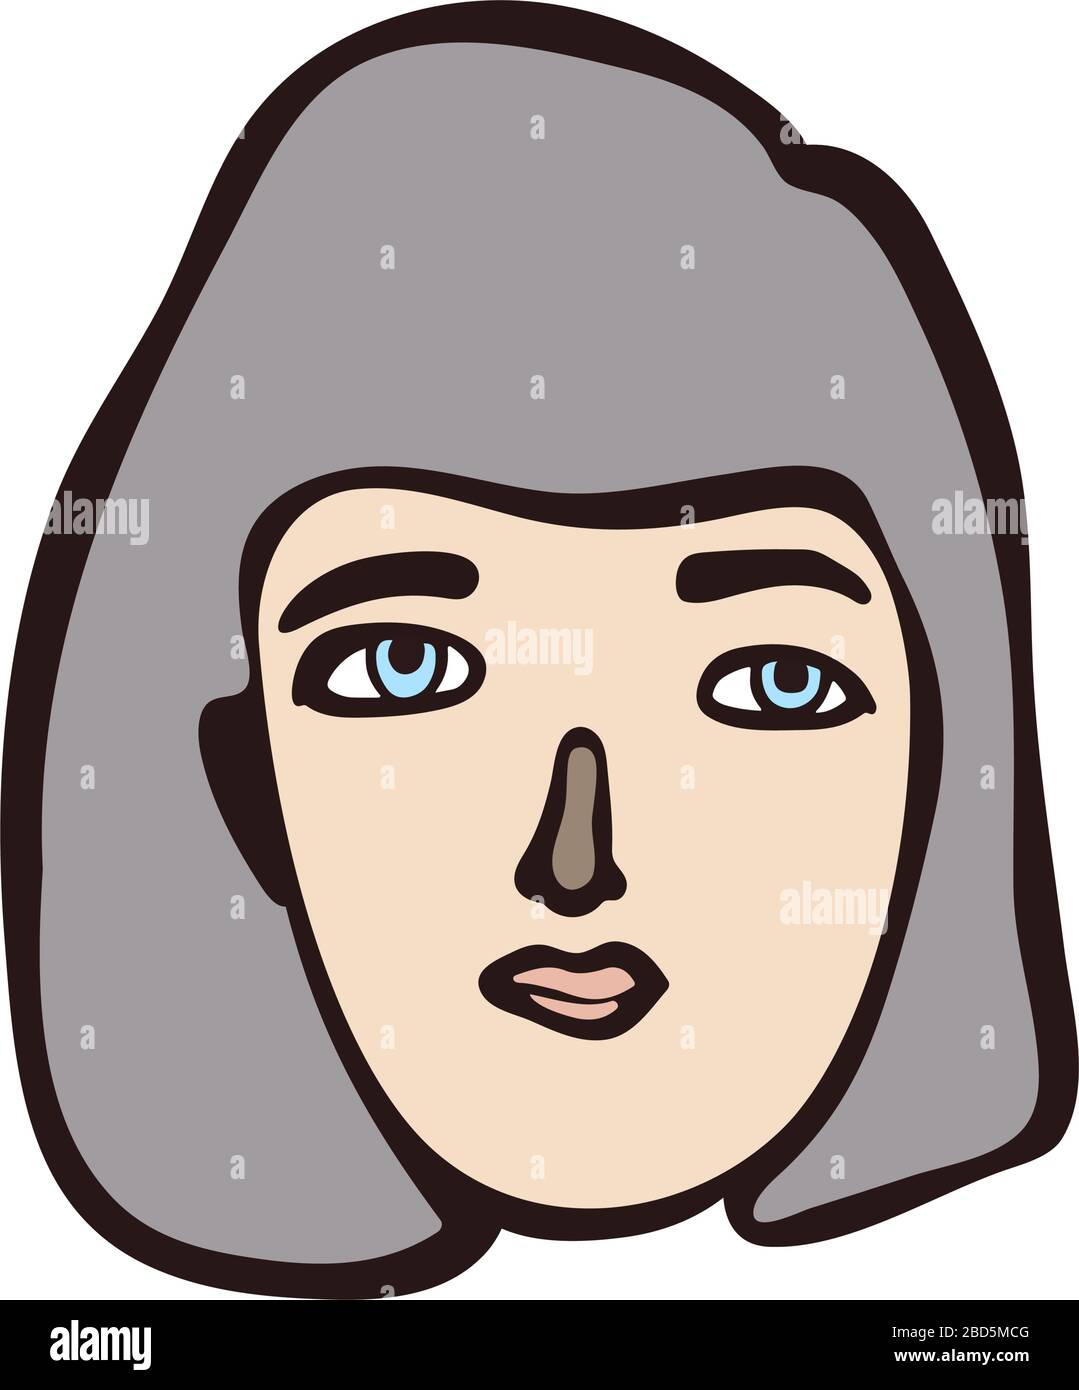 Minimalistisches linear isoliertes Frauenporträt. Grauhaariges Mädchen, weißes Gesicht mit hellen Augen. Einfache Gesichtszüge. Skandinavische primitive Grafik Stock Vektor